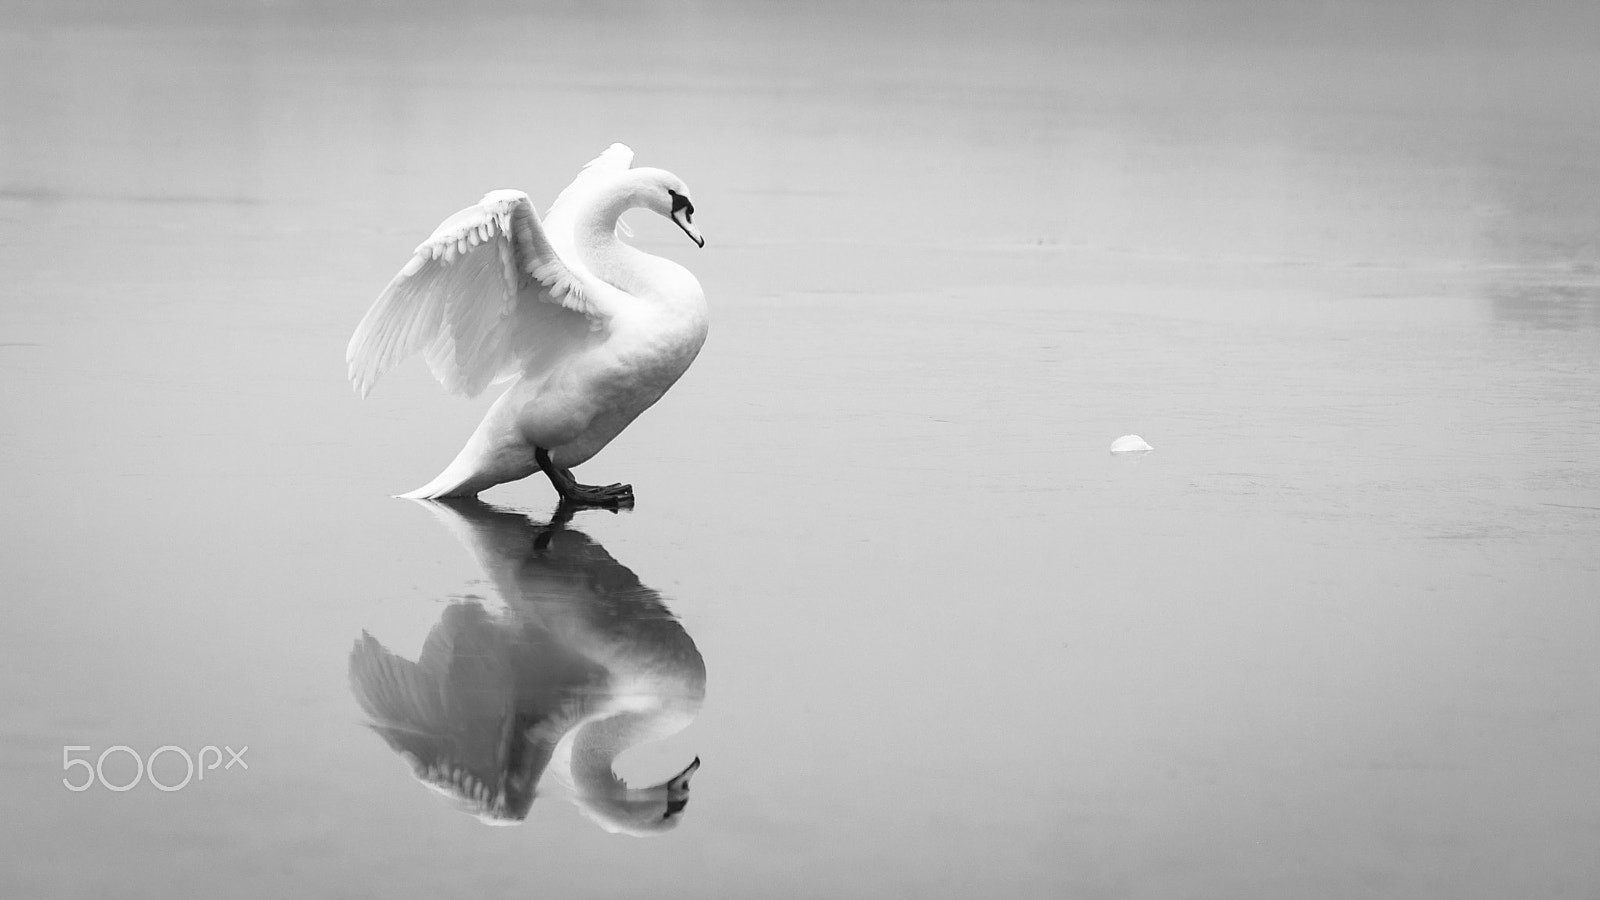 AF Nikkor 85mm f/1.8 sample photo. Swan photography